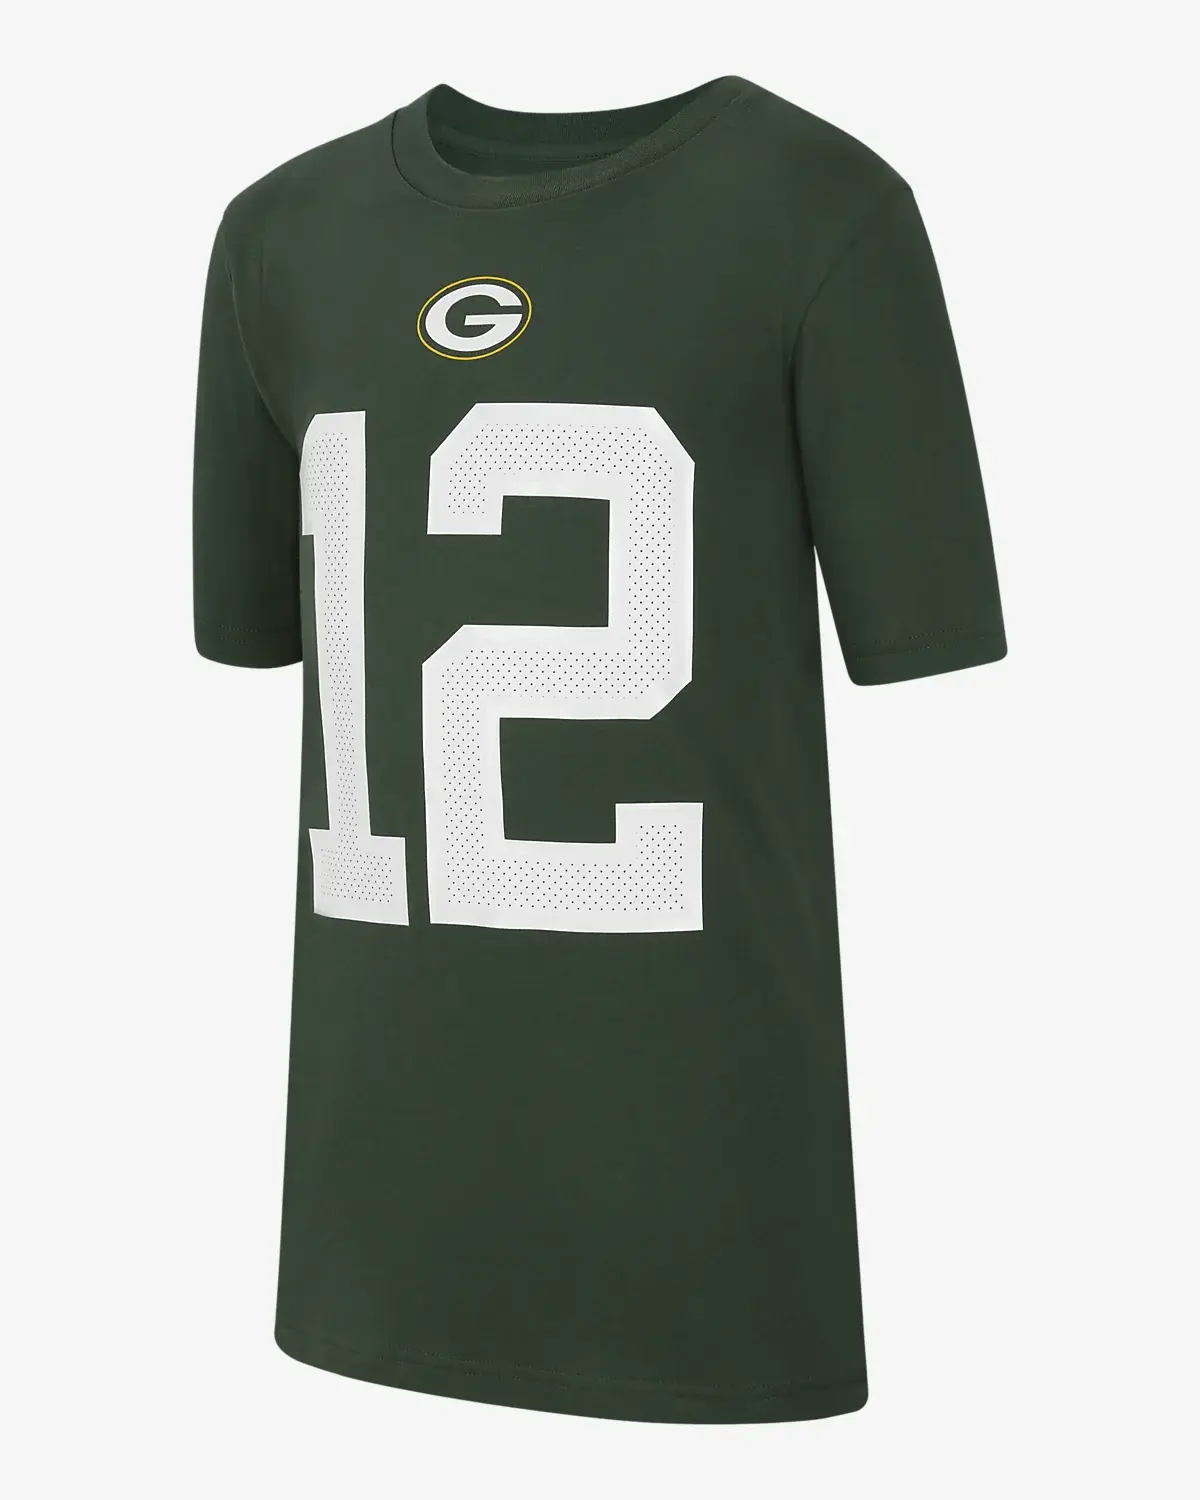 Nike (NFL Green Bay Packers). 1